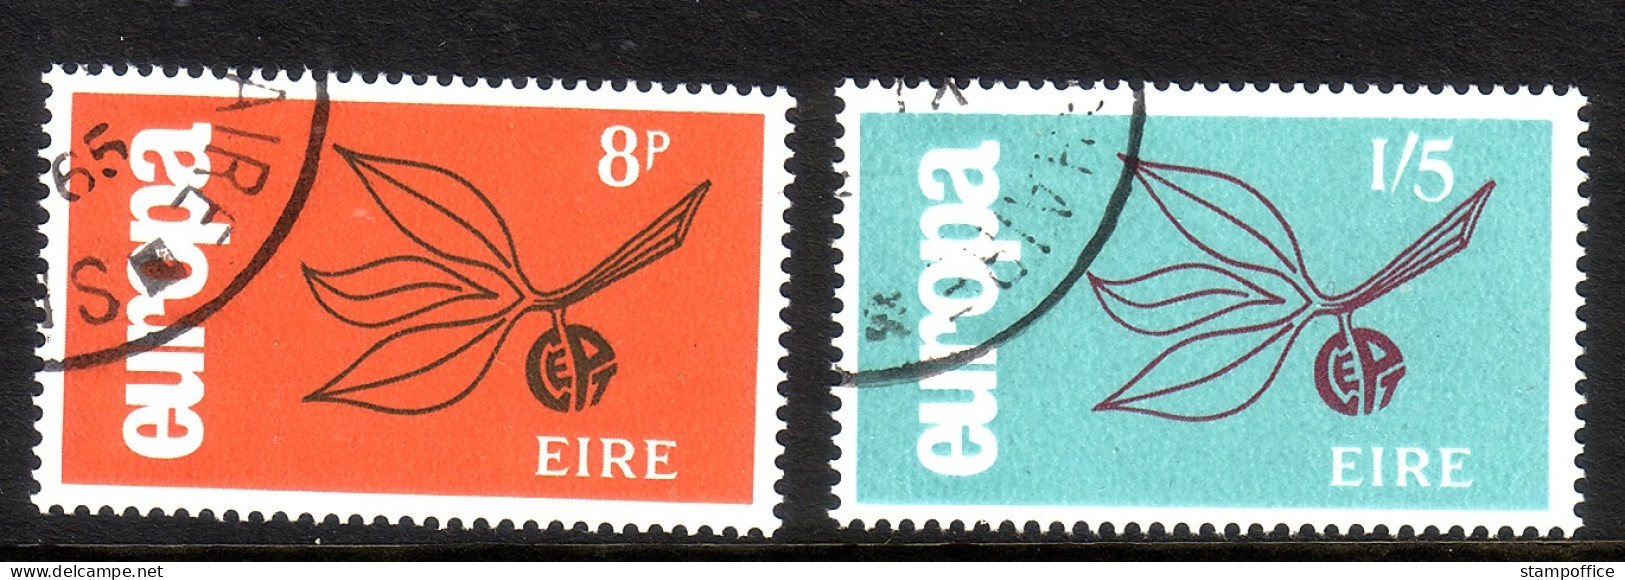 IRLAND MI-NR. 176-177 GESTEMPELT EUROPA 1965 - ZWEIG - 1965